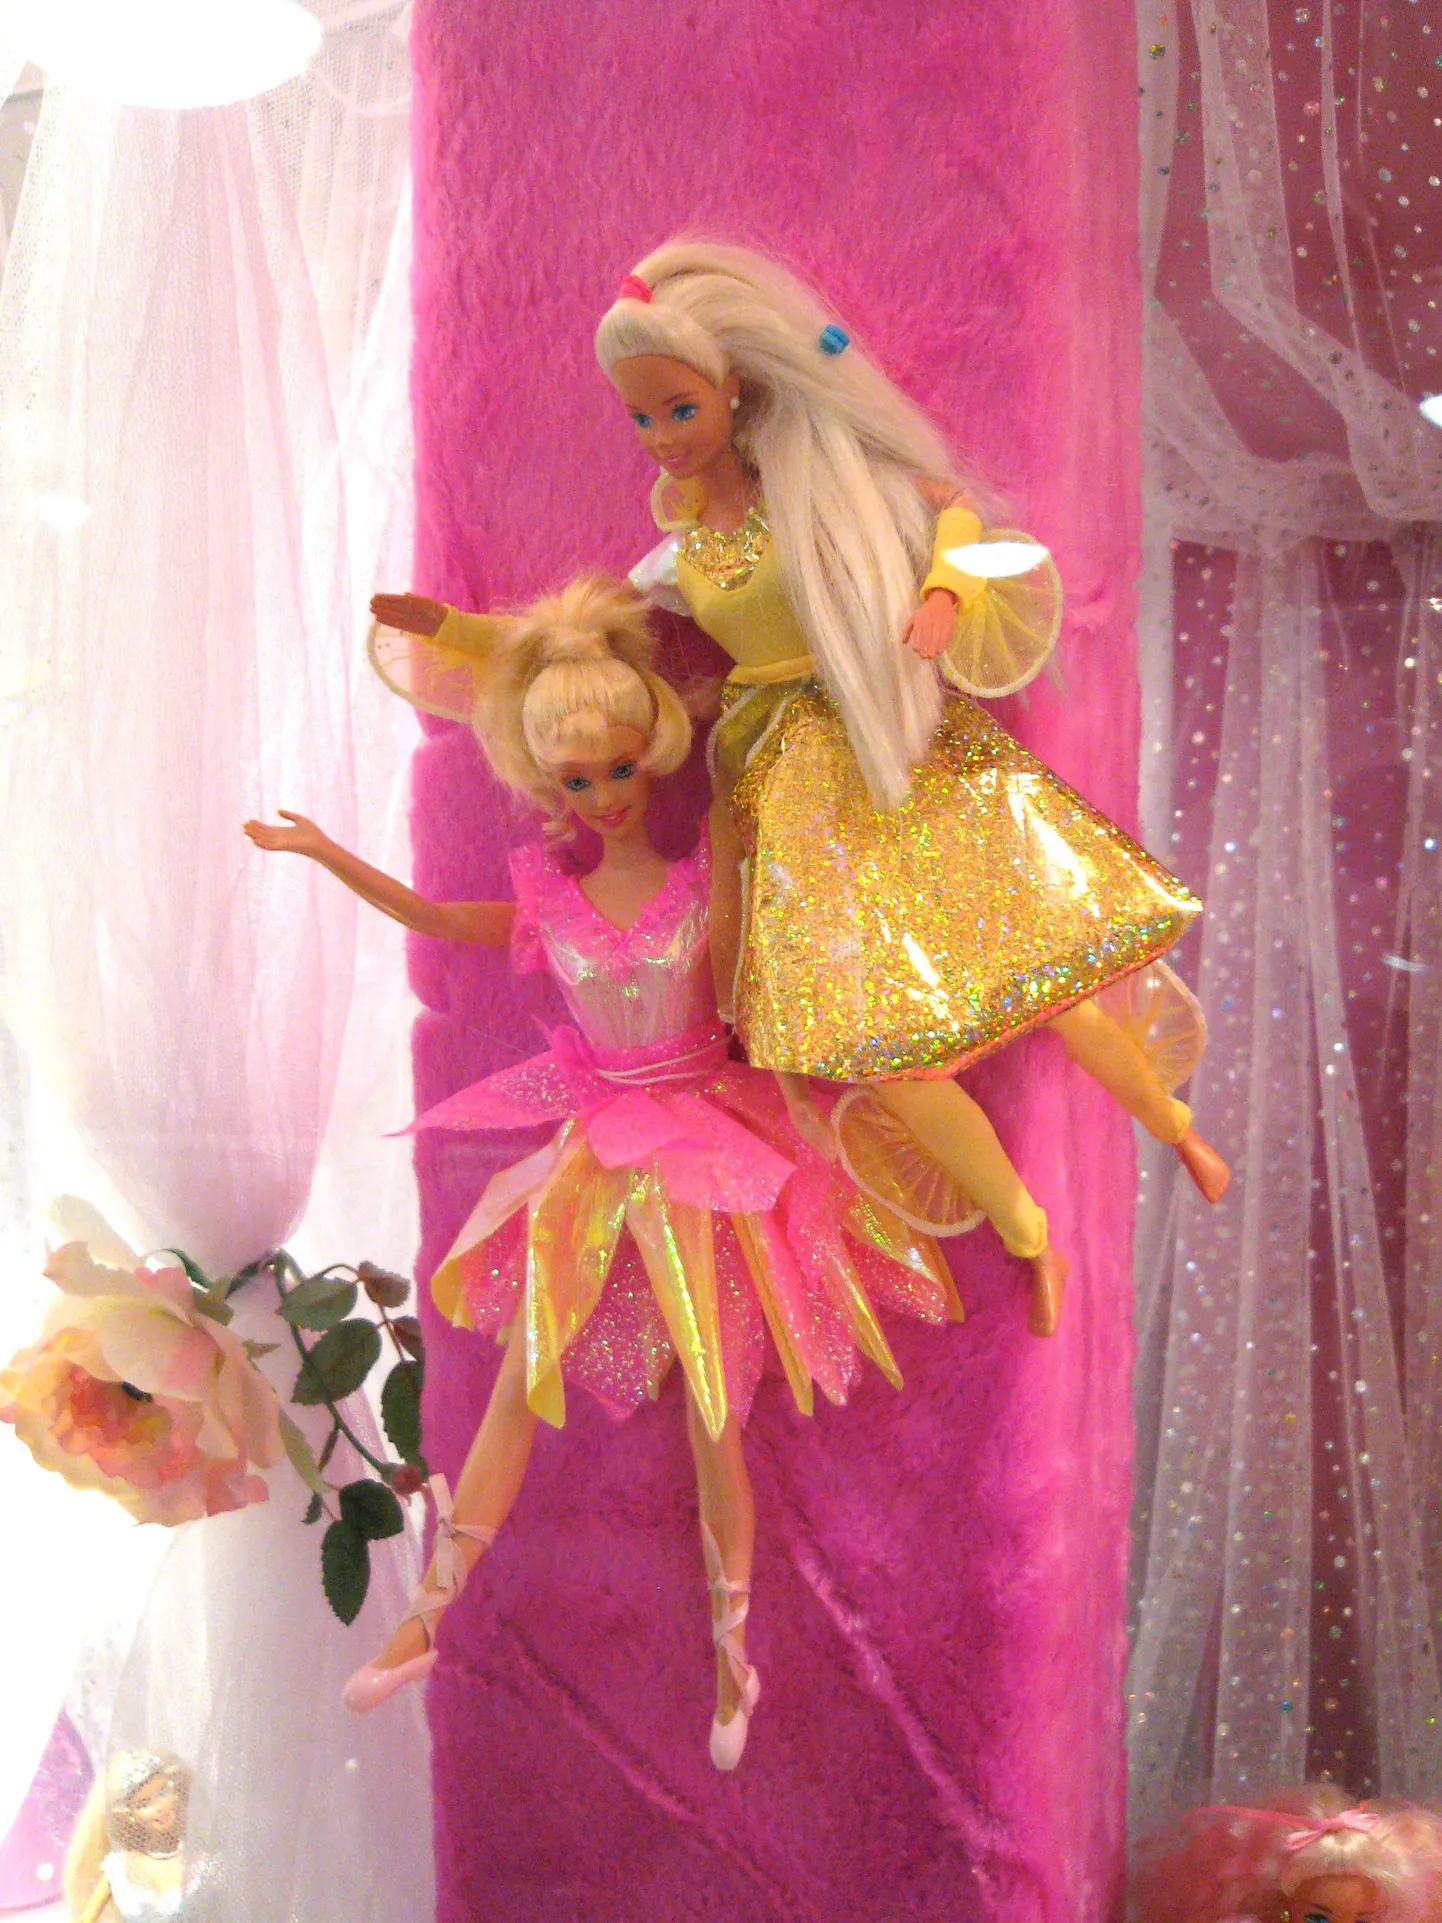 Matteli tuntuim toode Barbie-nukk polnud seekordse trahviga seotud